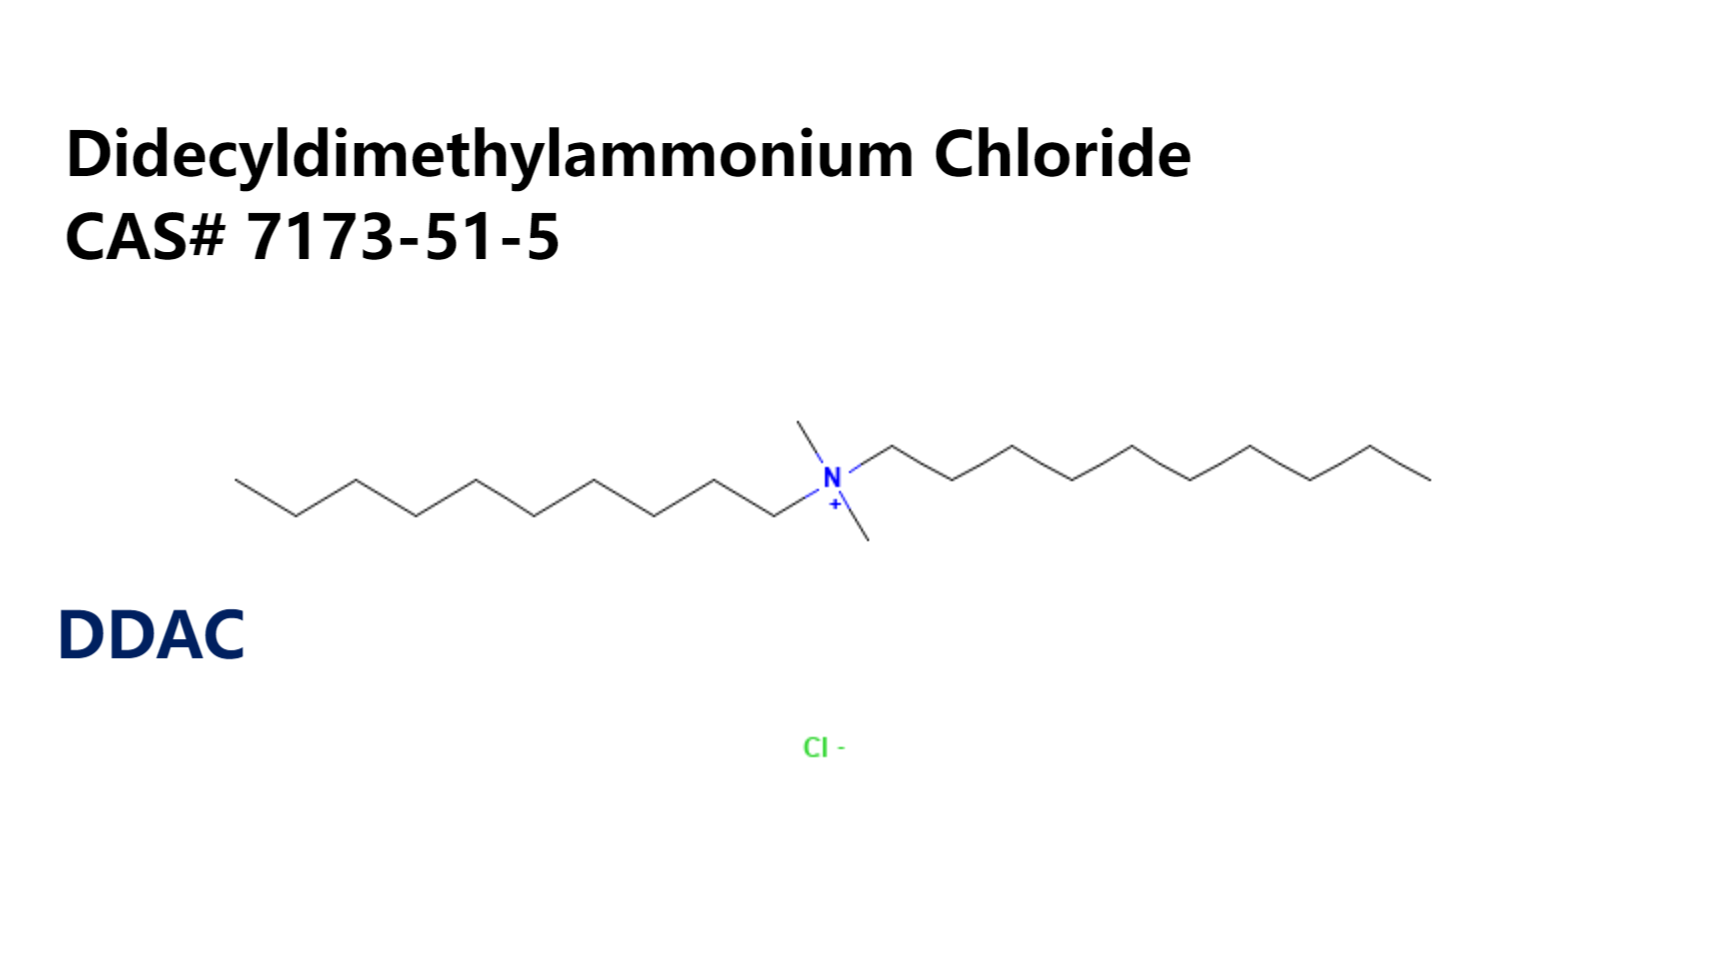 Didecyldimethylammonium Chloride DDAC